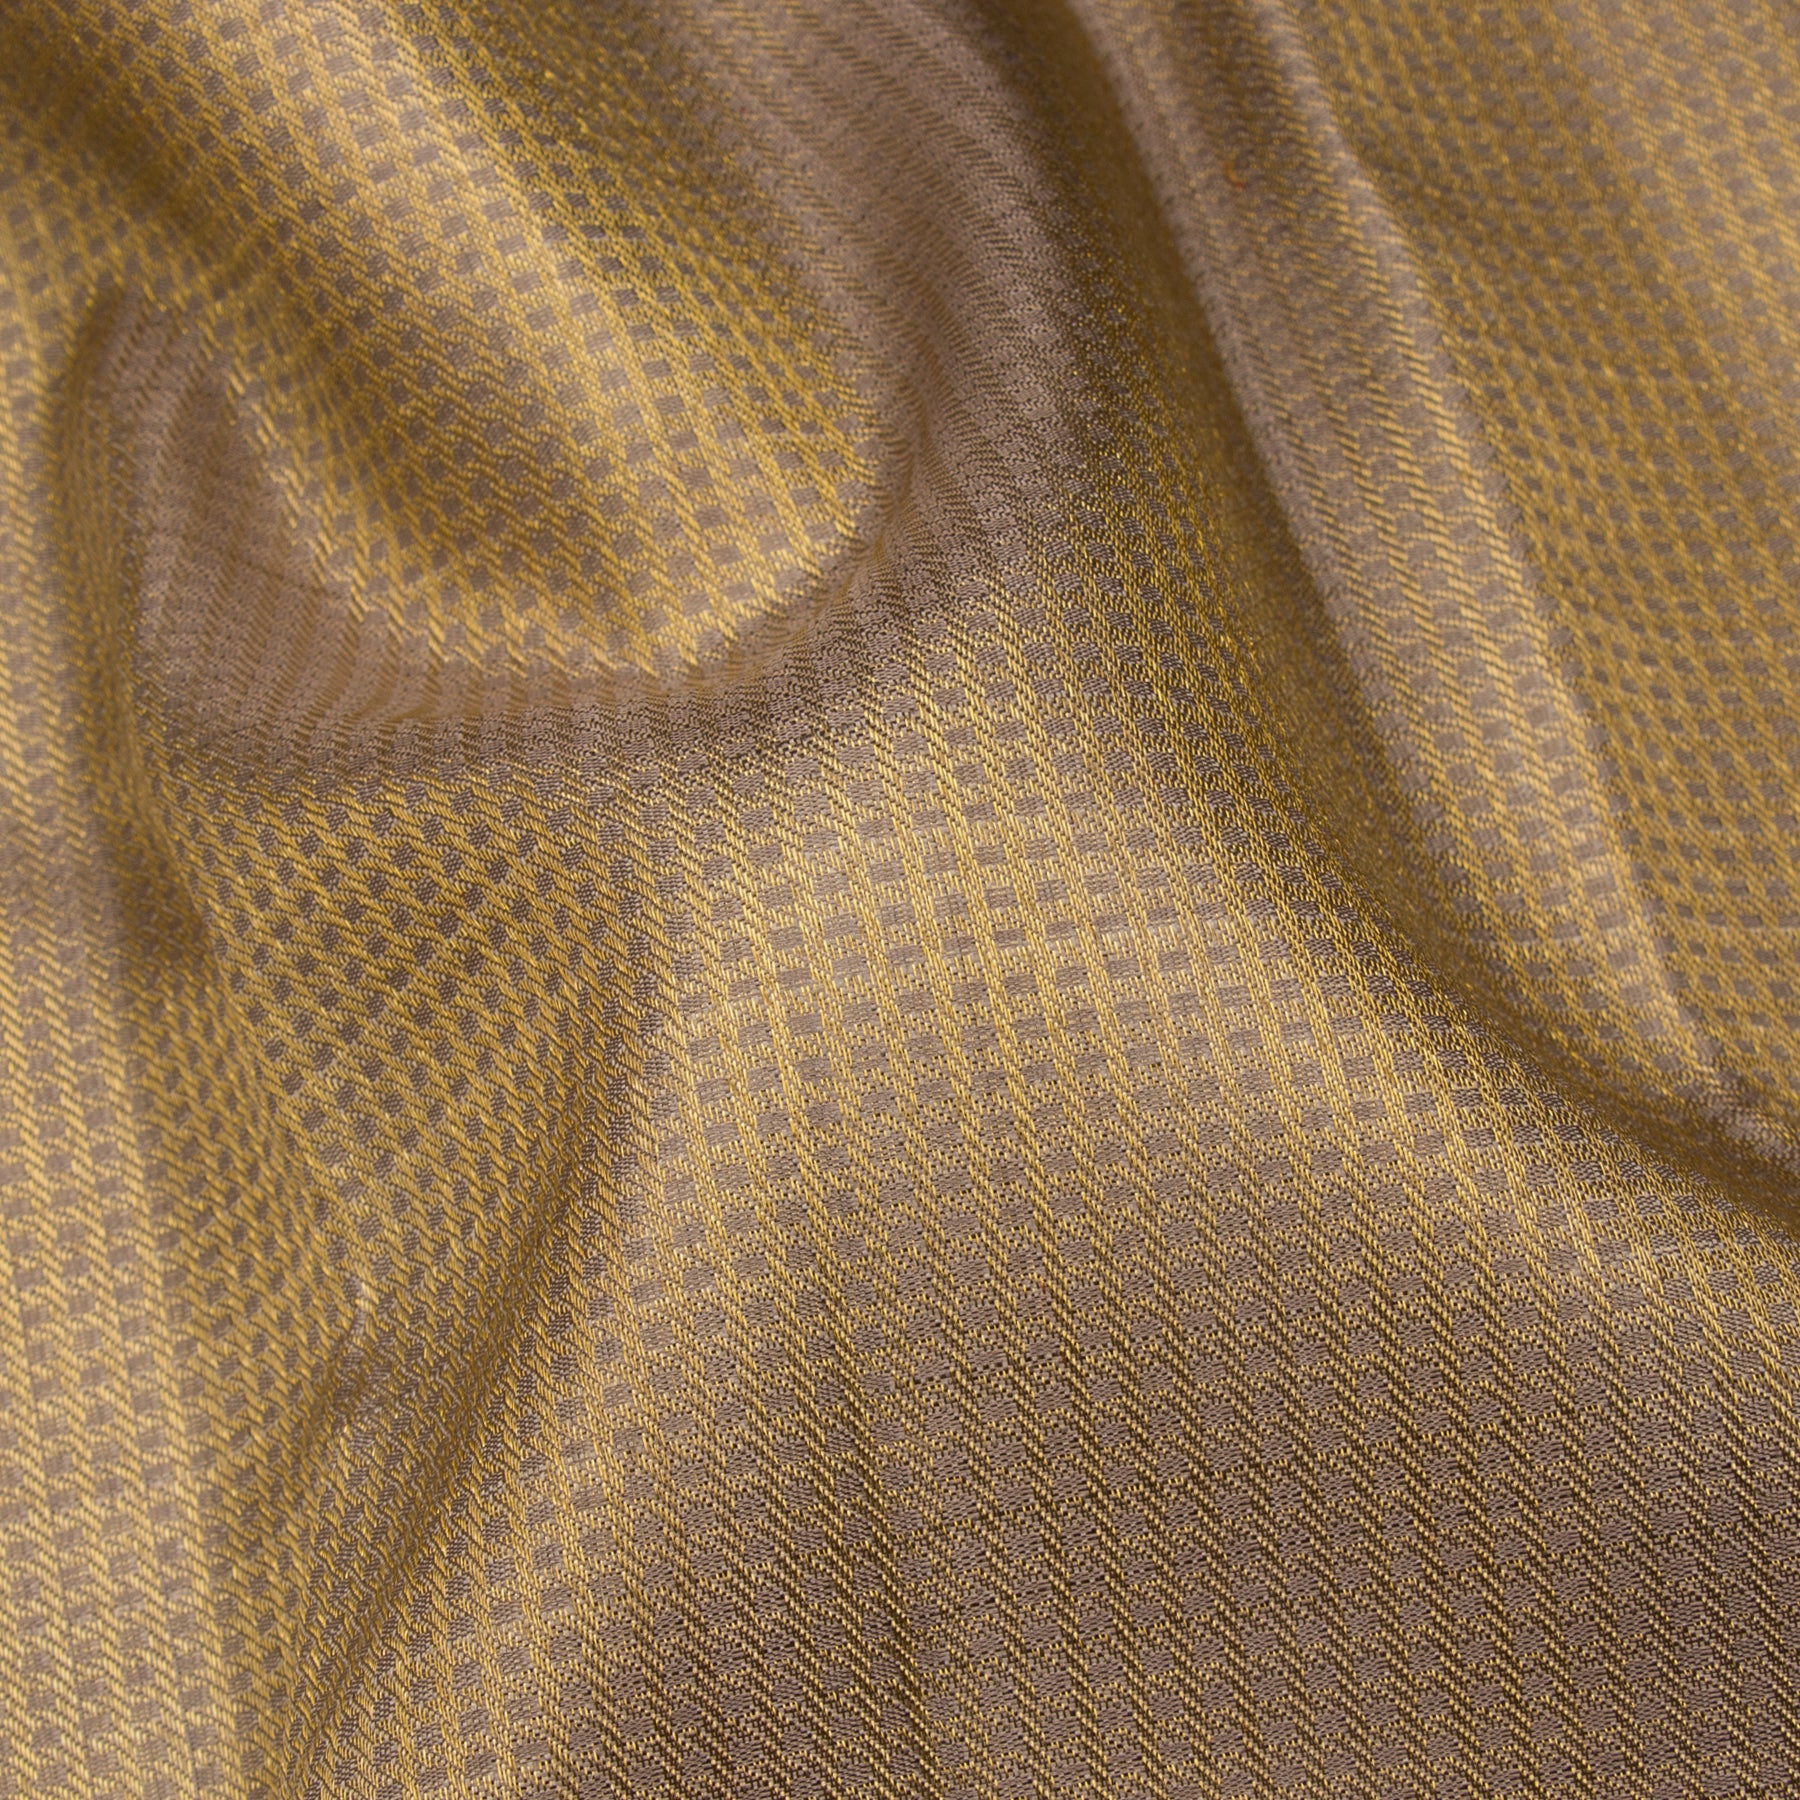 Kanakavalli Kanjivaram Silk Sari 23-110-HS001-14320 - Fabric View